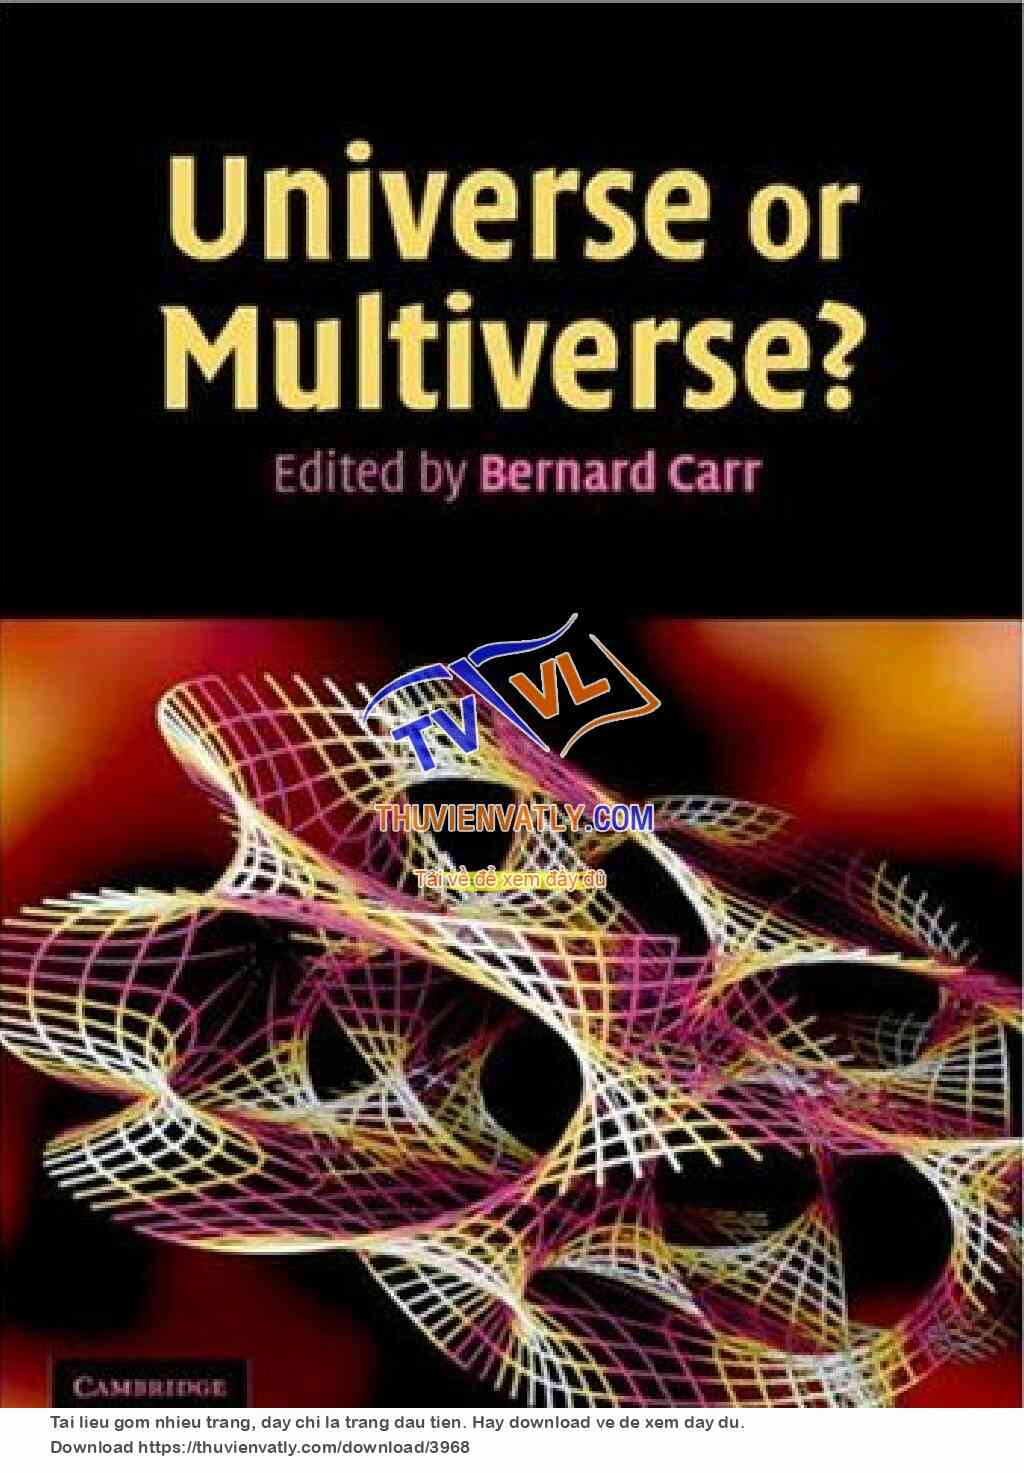 Universe or Multiverse (Bernard Carr)